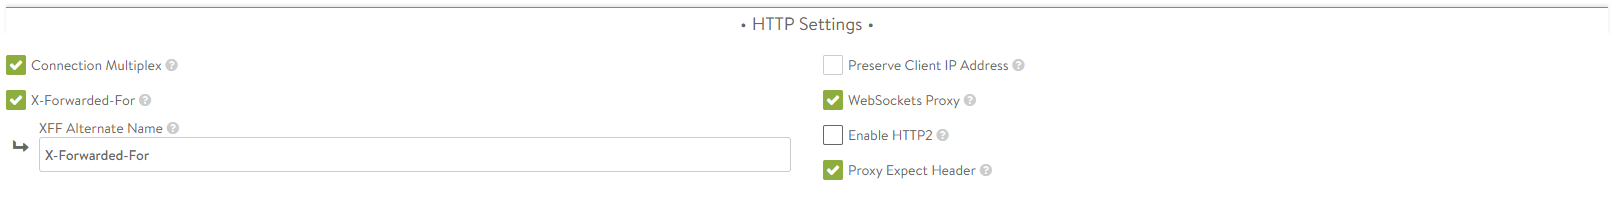 HTTP settings